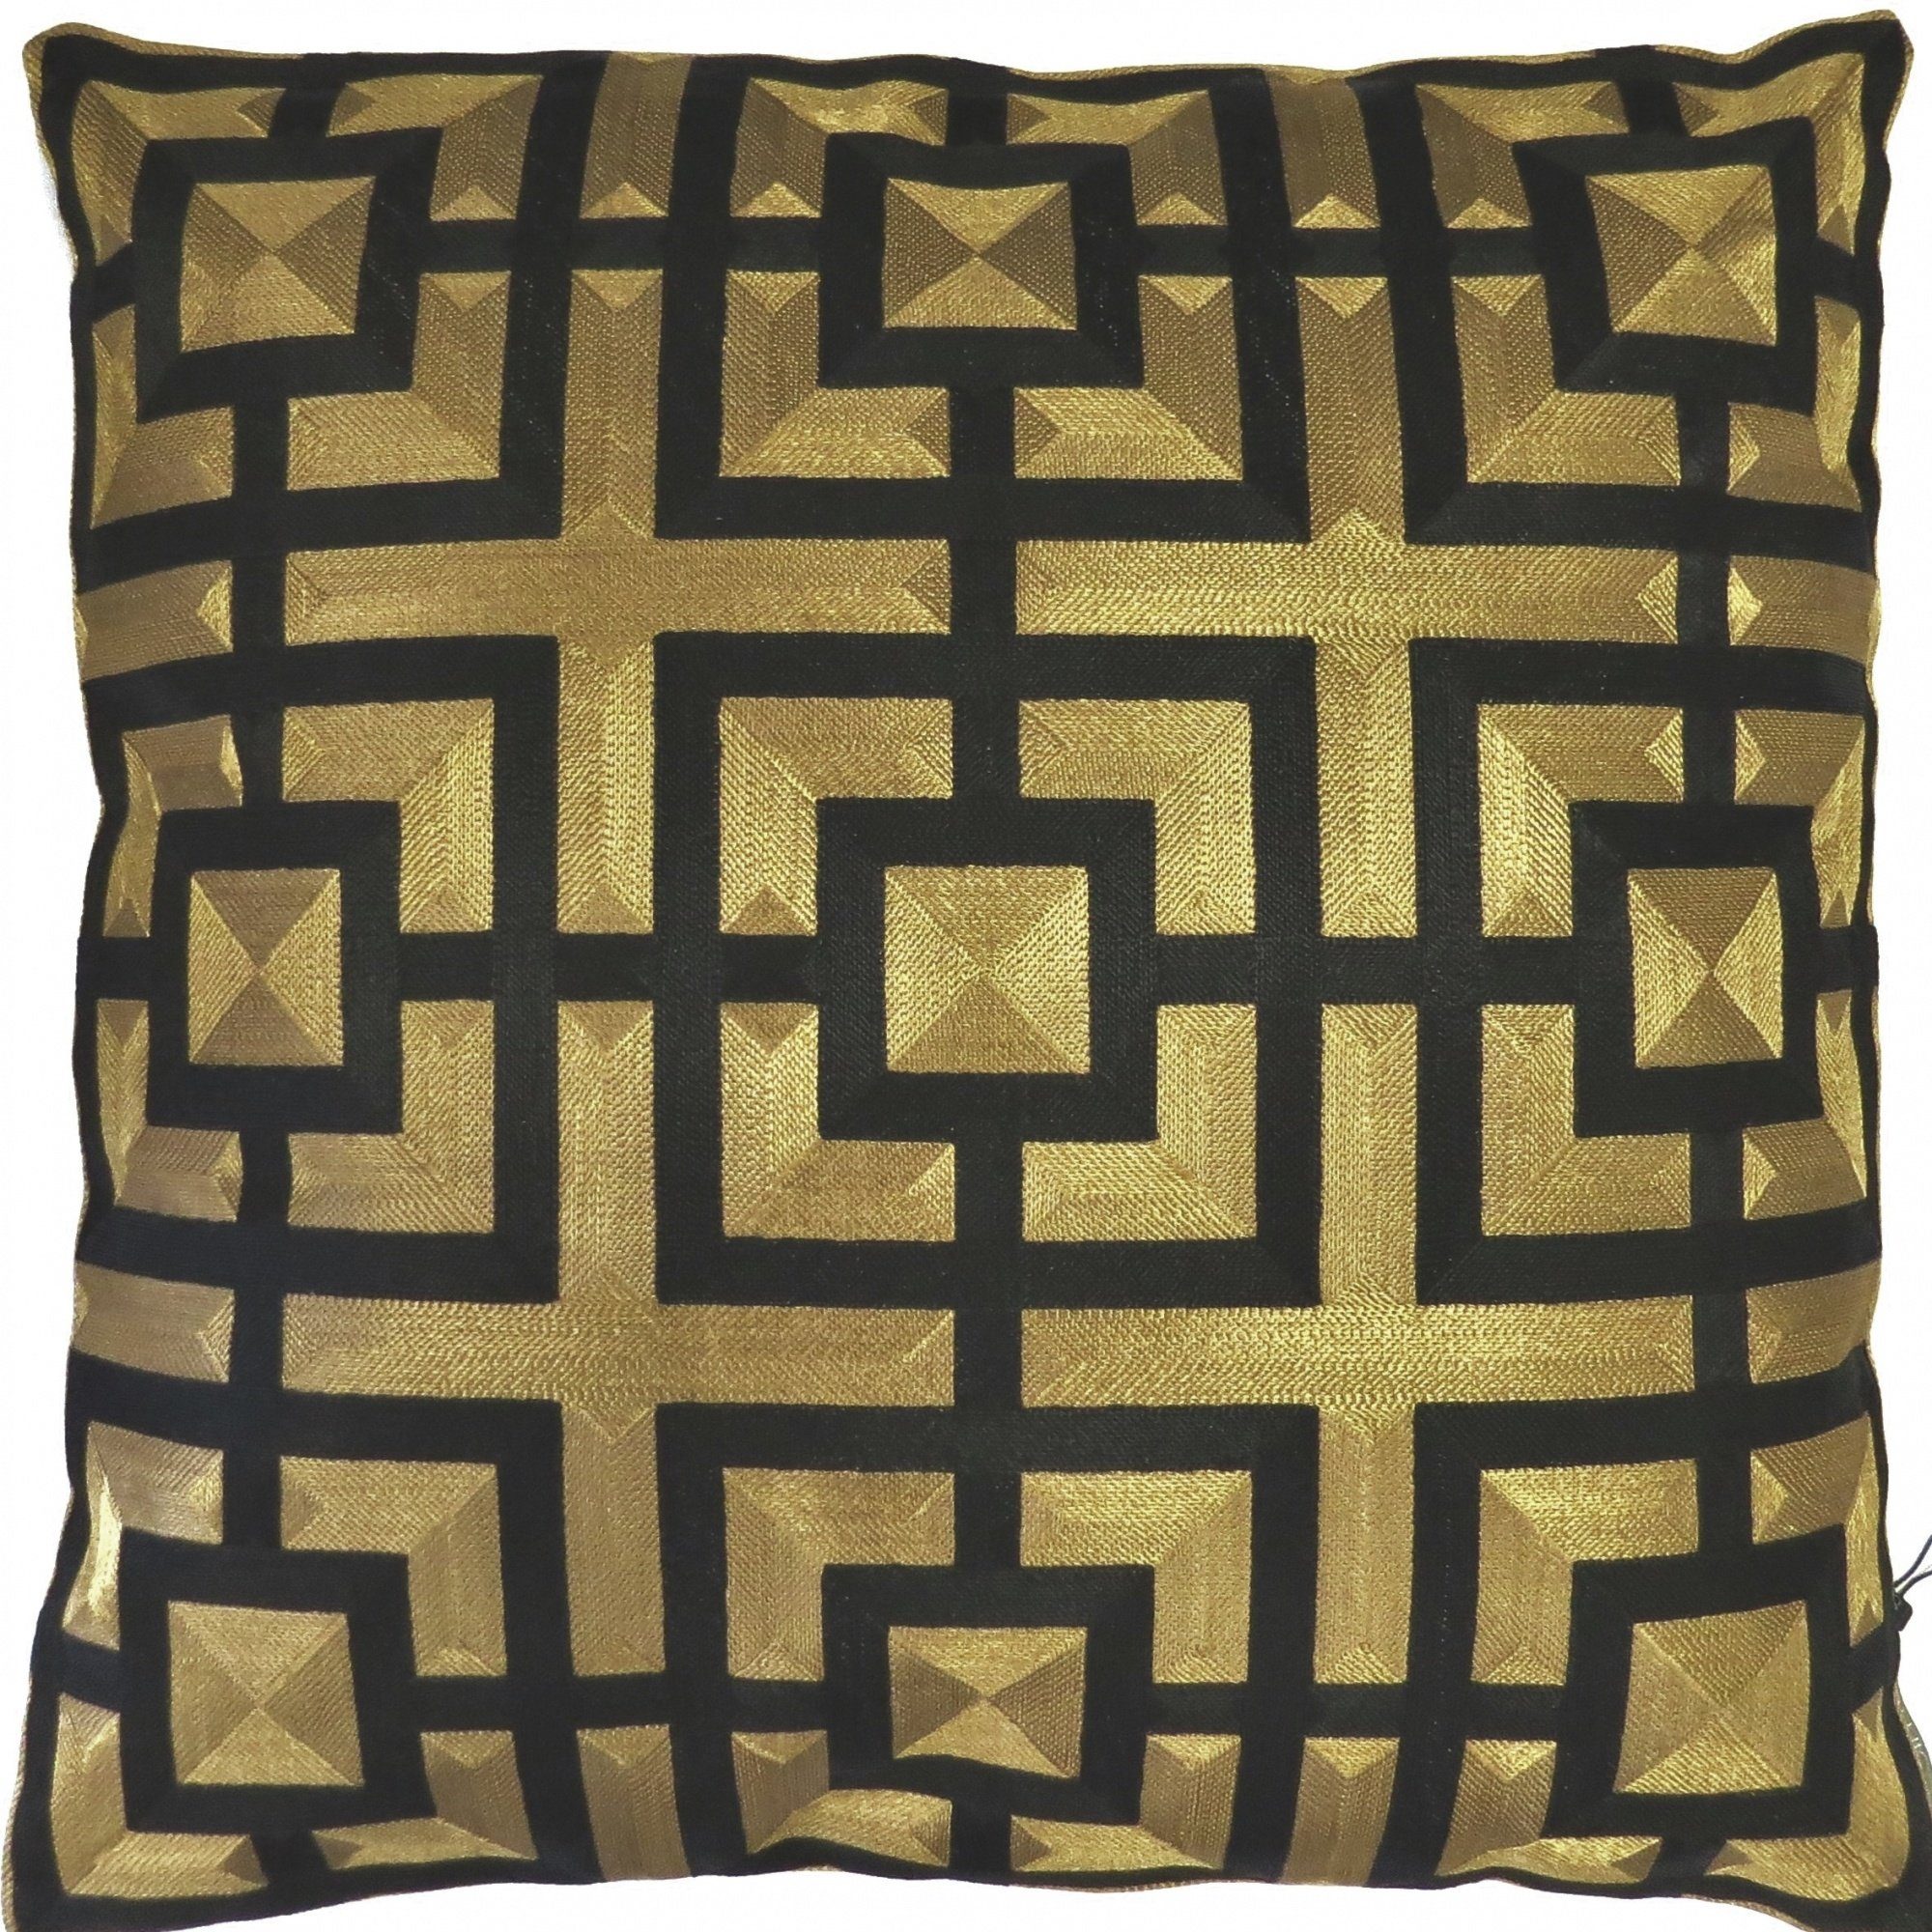 Zierkissen Kissen Deko Zier Gold Schwarz Geometrisch Muster 50 x 50 cm Colmore Luxus